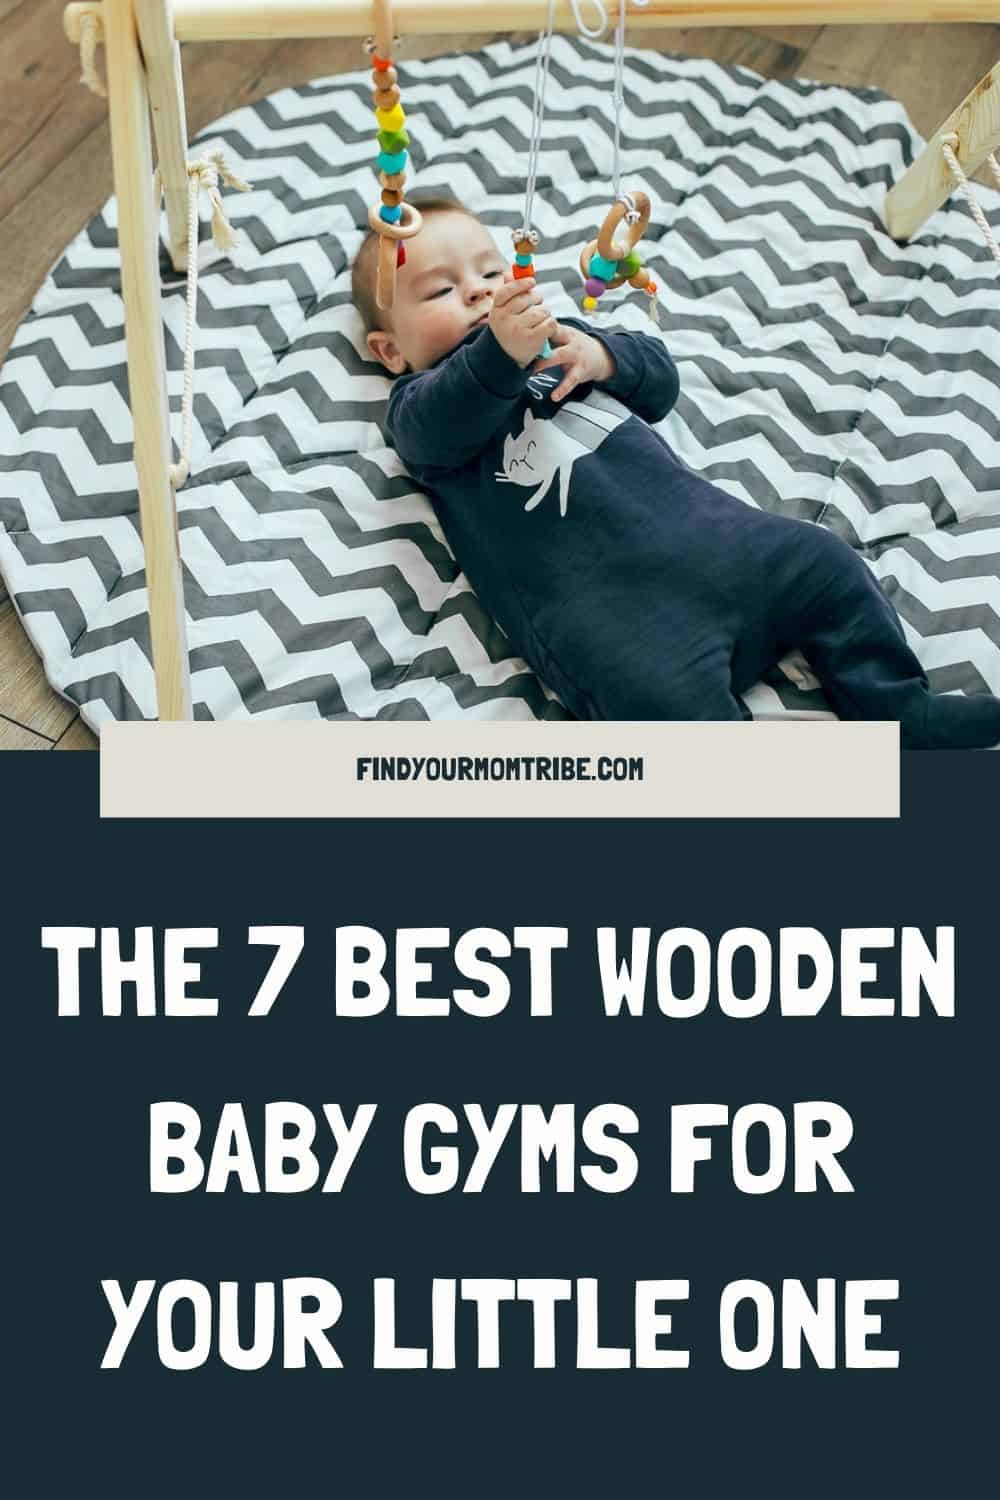 Pinterest wooden baby gym